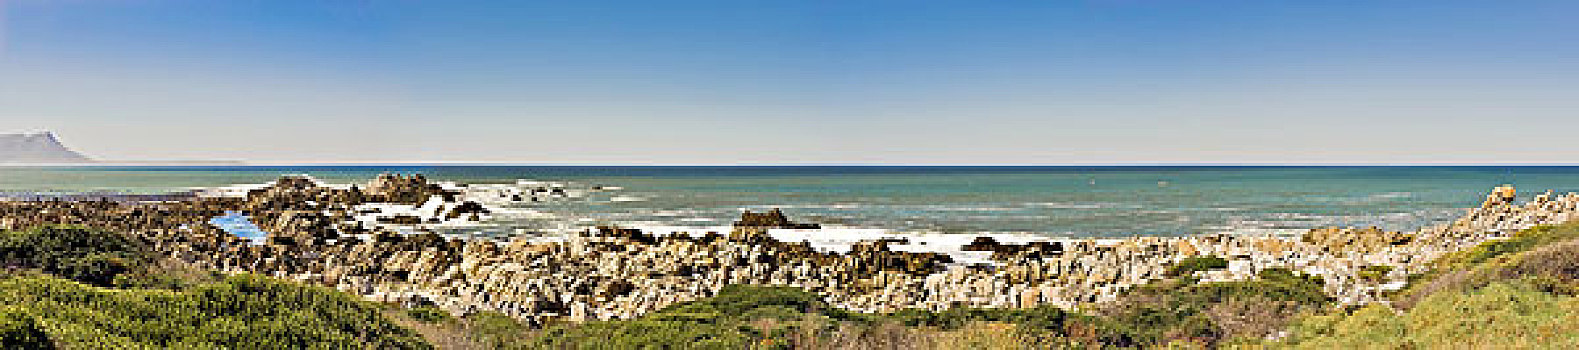 南非,西海角,海边风景,海洋